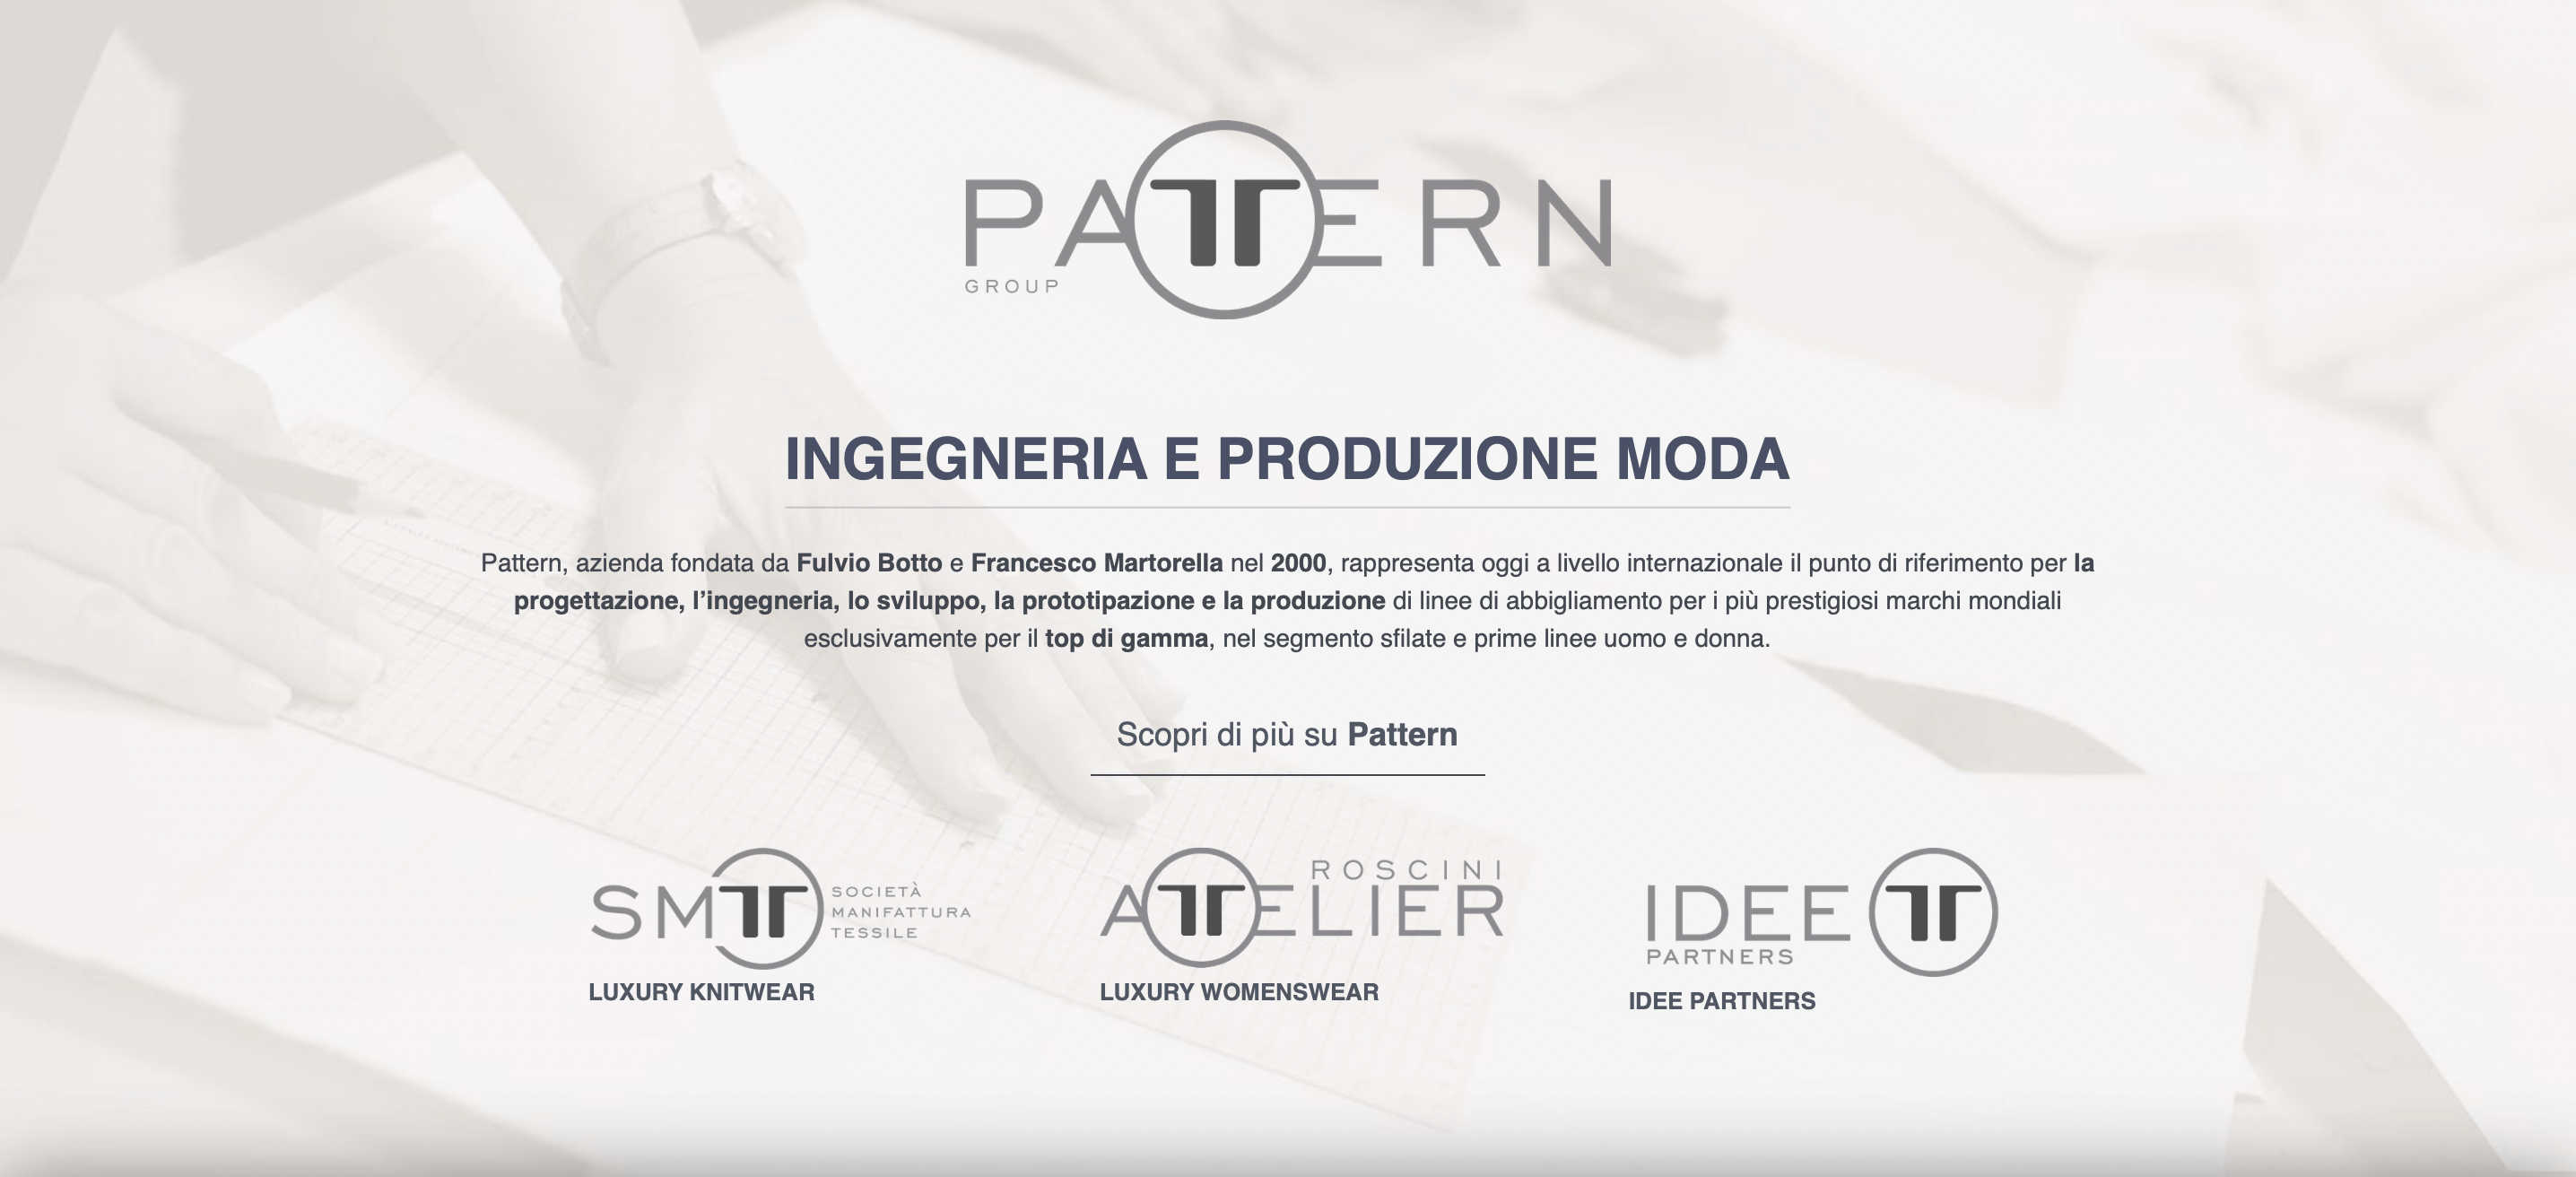 意大利高端服装设计公司 Pattern 收购佛罗伦萨奢侈皮具生产商Idee Partners 多数股权